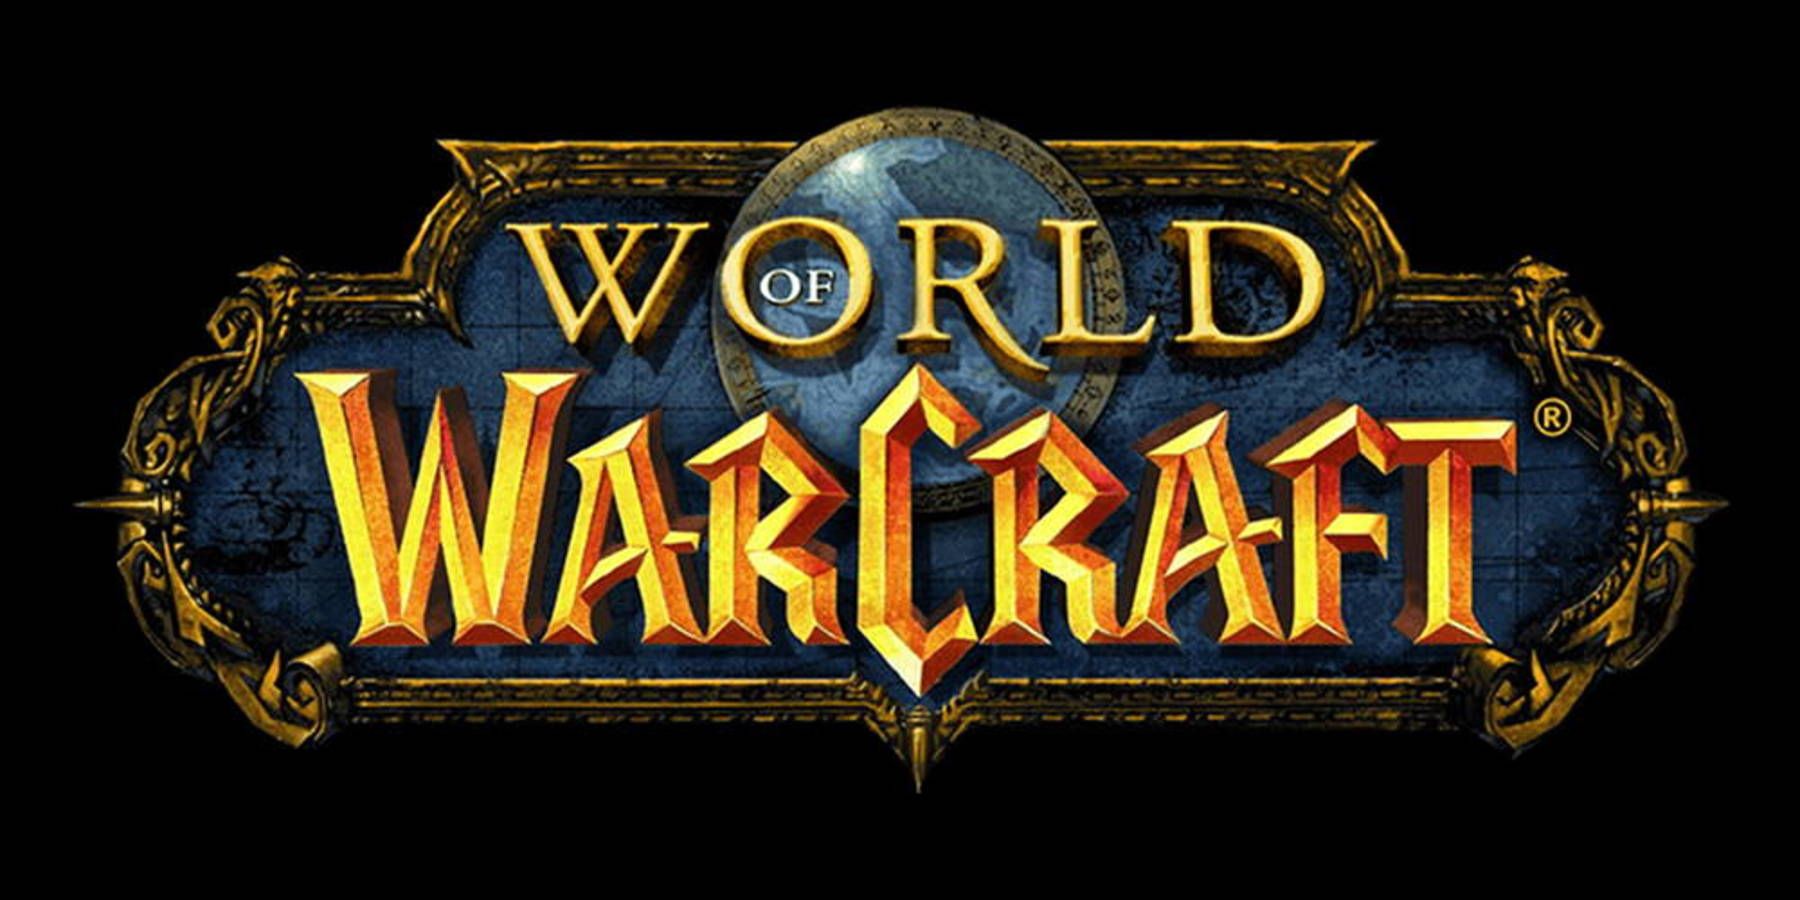 world of warcraft logo